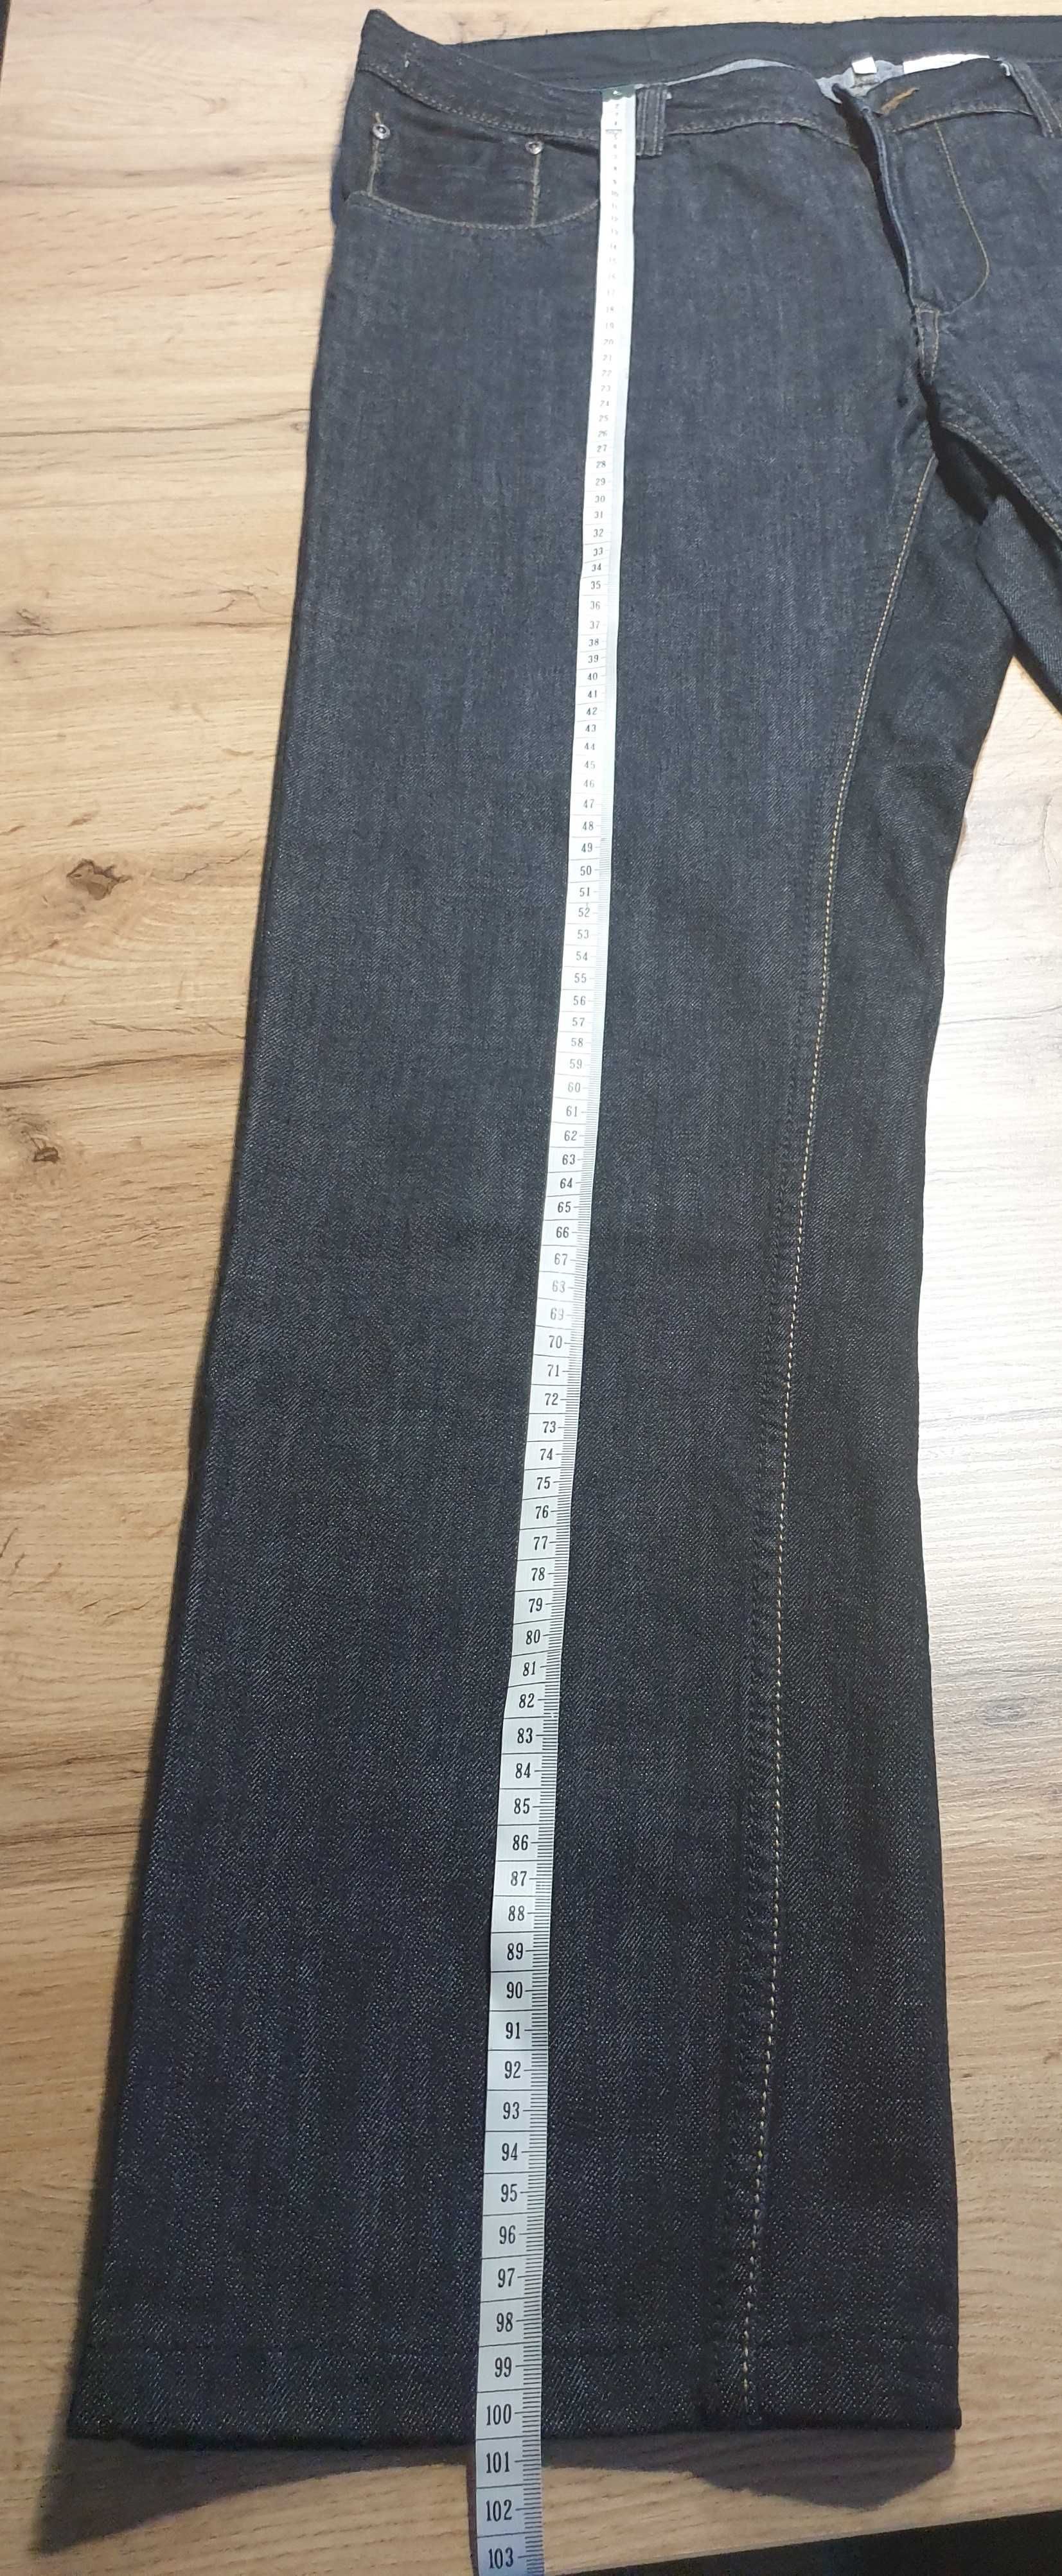 Spodnie jeansowe męskie, C&A, 100% bawełna, rozmiar 36/34